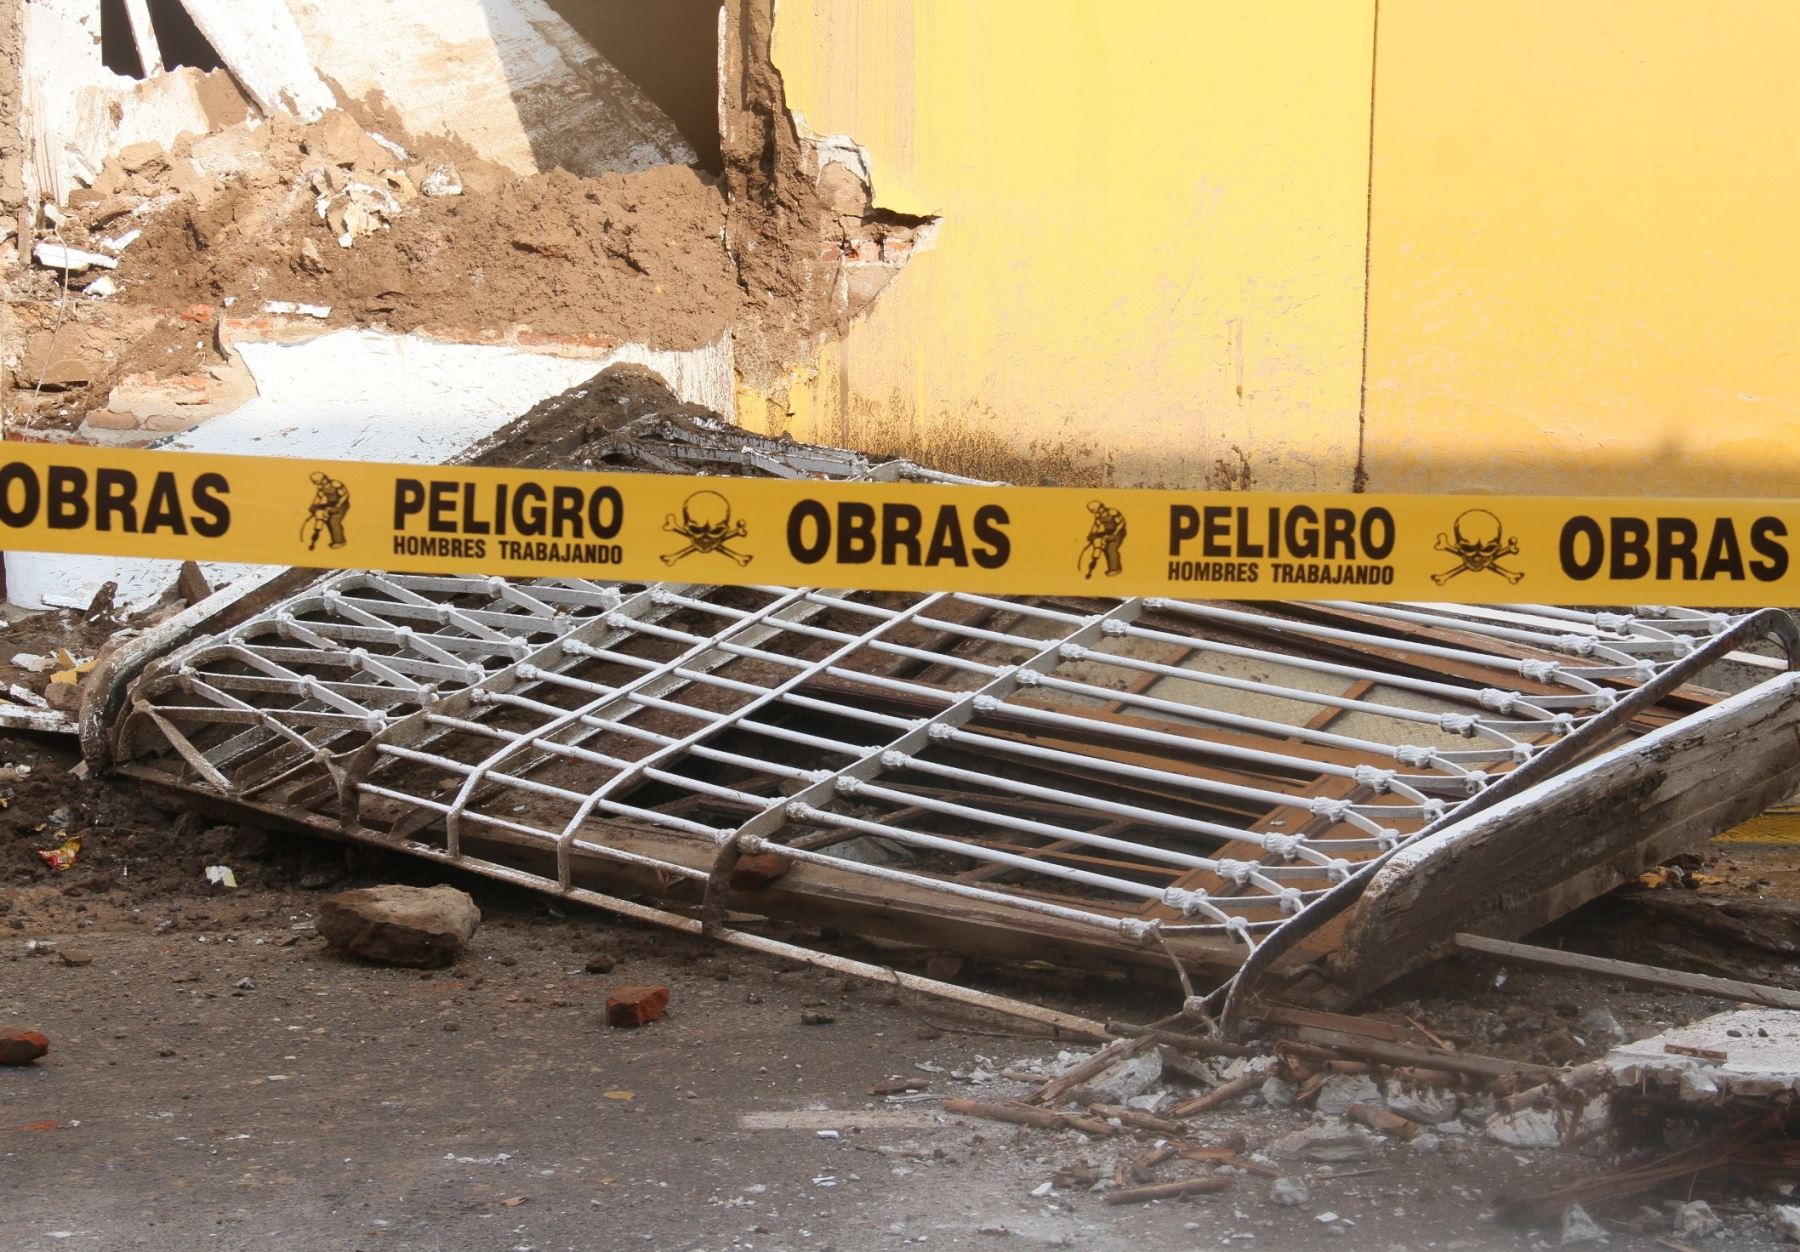 El 70 % de casonas de Trujillo colapsaría si sucede un terremoto, alerta Defensa Civil. ANDINA